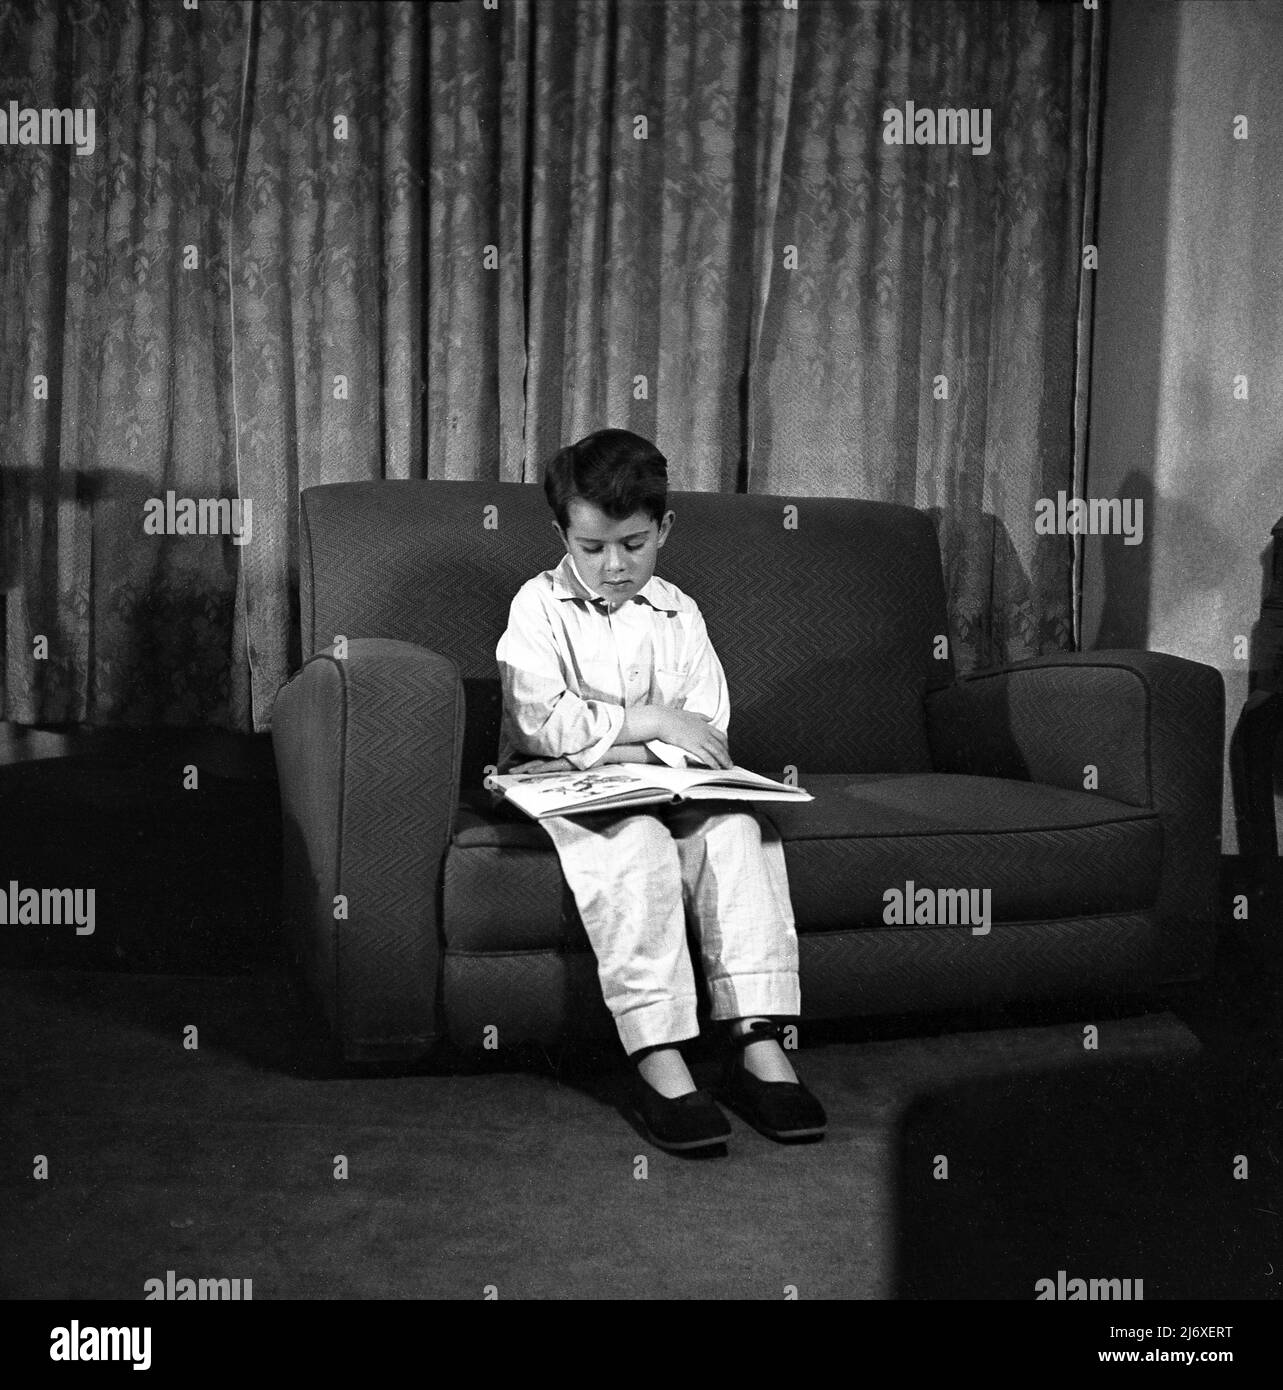 1950s, historique, jeune garçon dans son pyjama et pantoufles assis sur un petit canapé regardant un livre d'images avant le coucher, Angleterre, Royaume-Uni. Banque D'Images